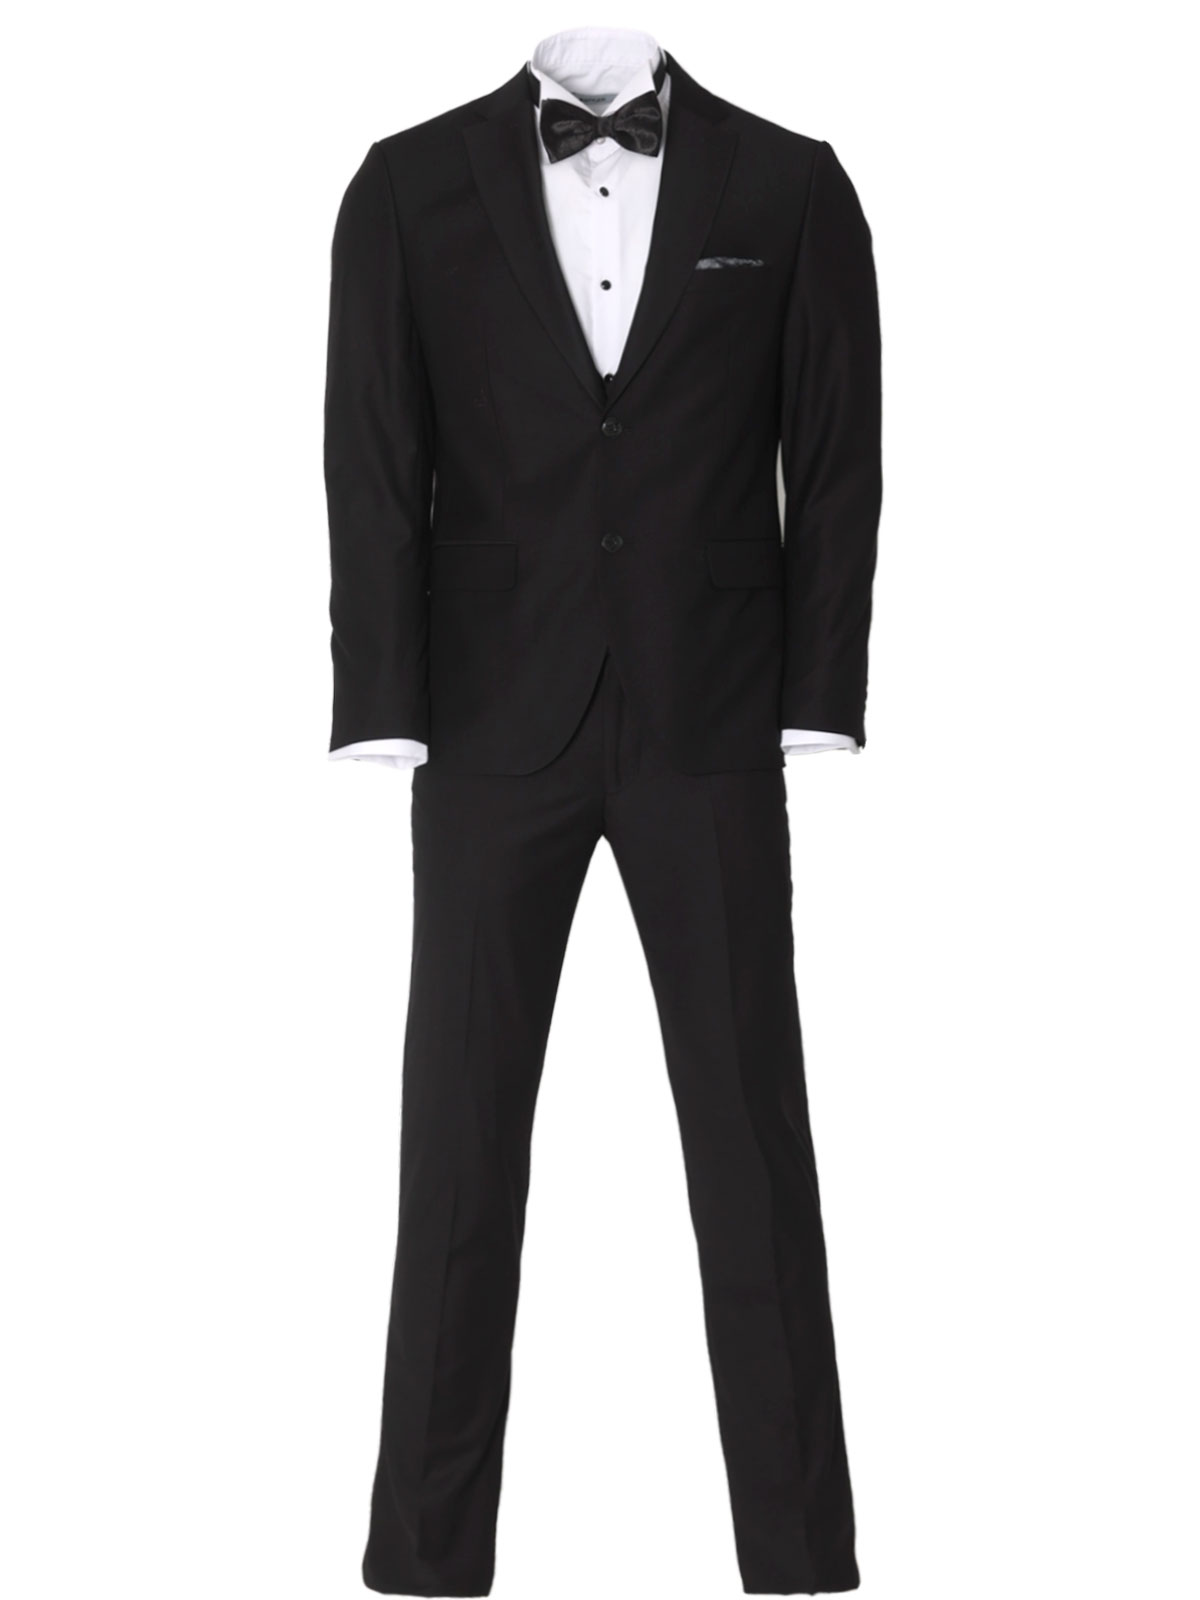 Κοστούμι σε κλασικό μαύρο χρώμα - 68074 € 236.22 img2